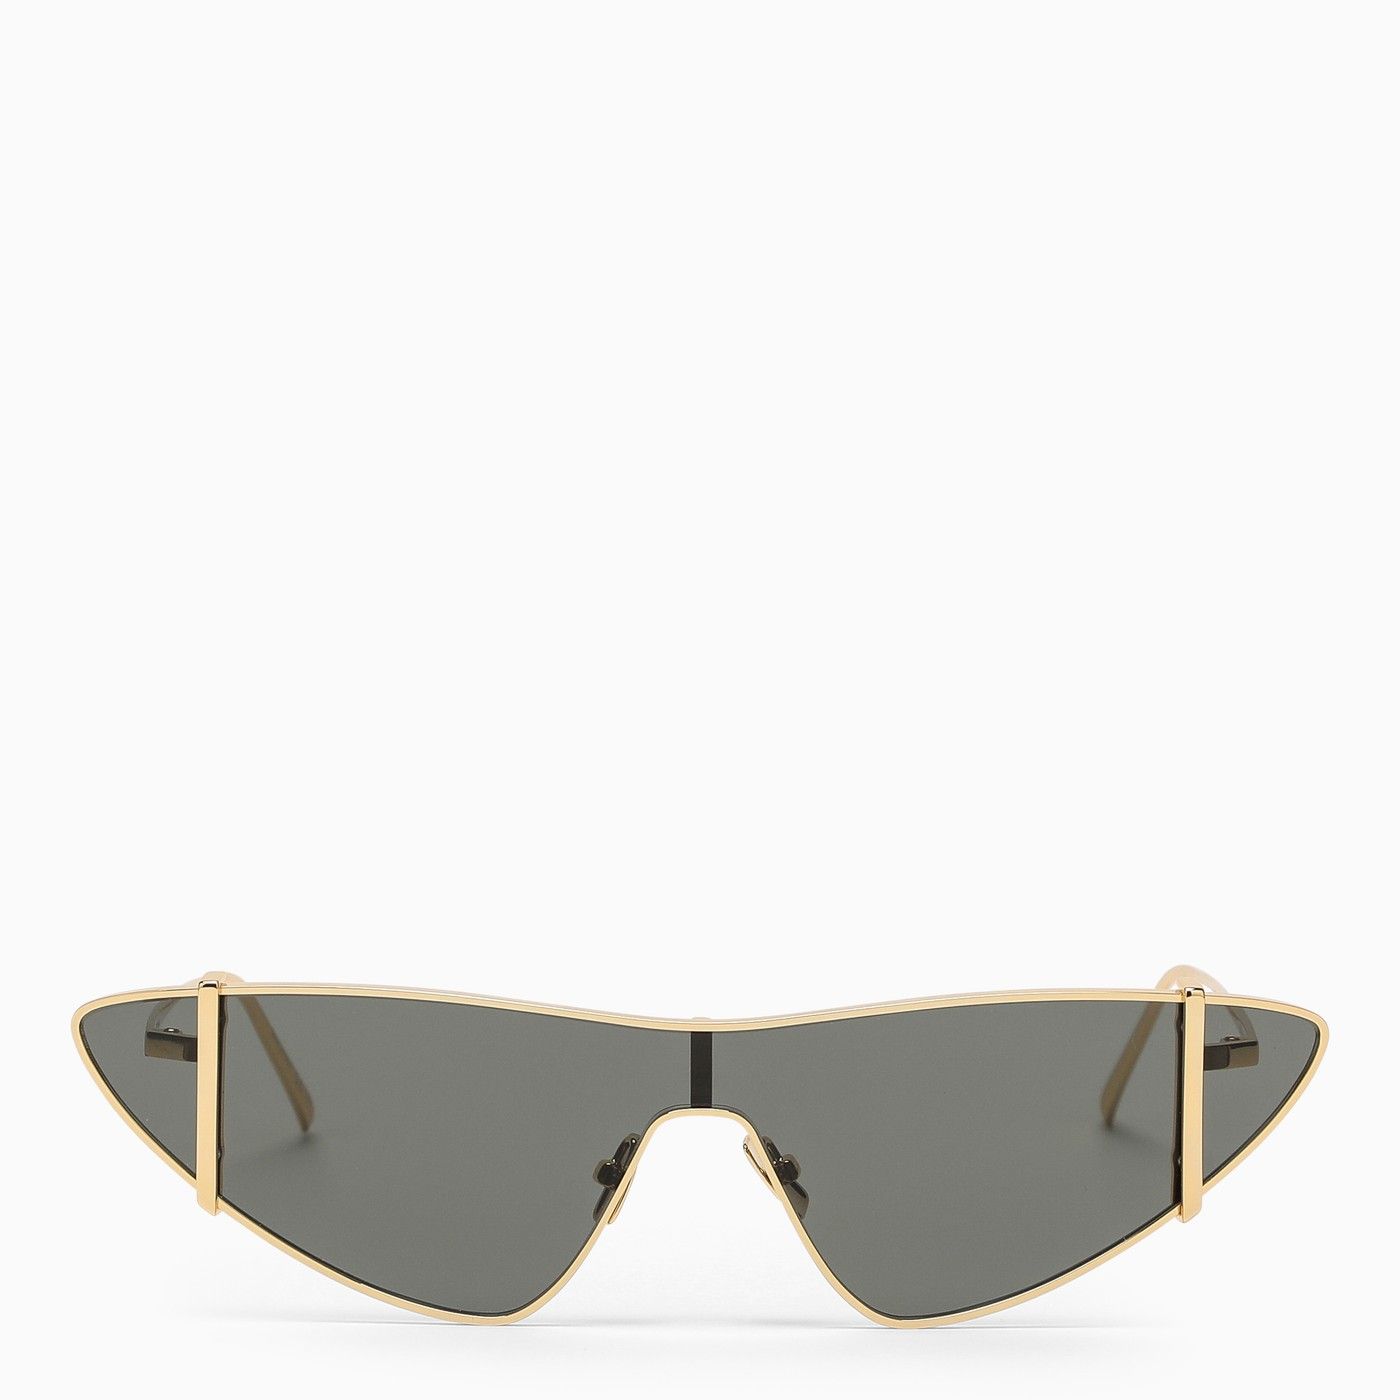 Gold SL 536 sunglasses | The Double F